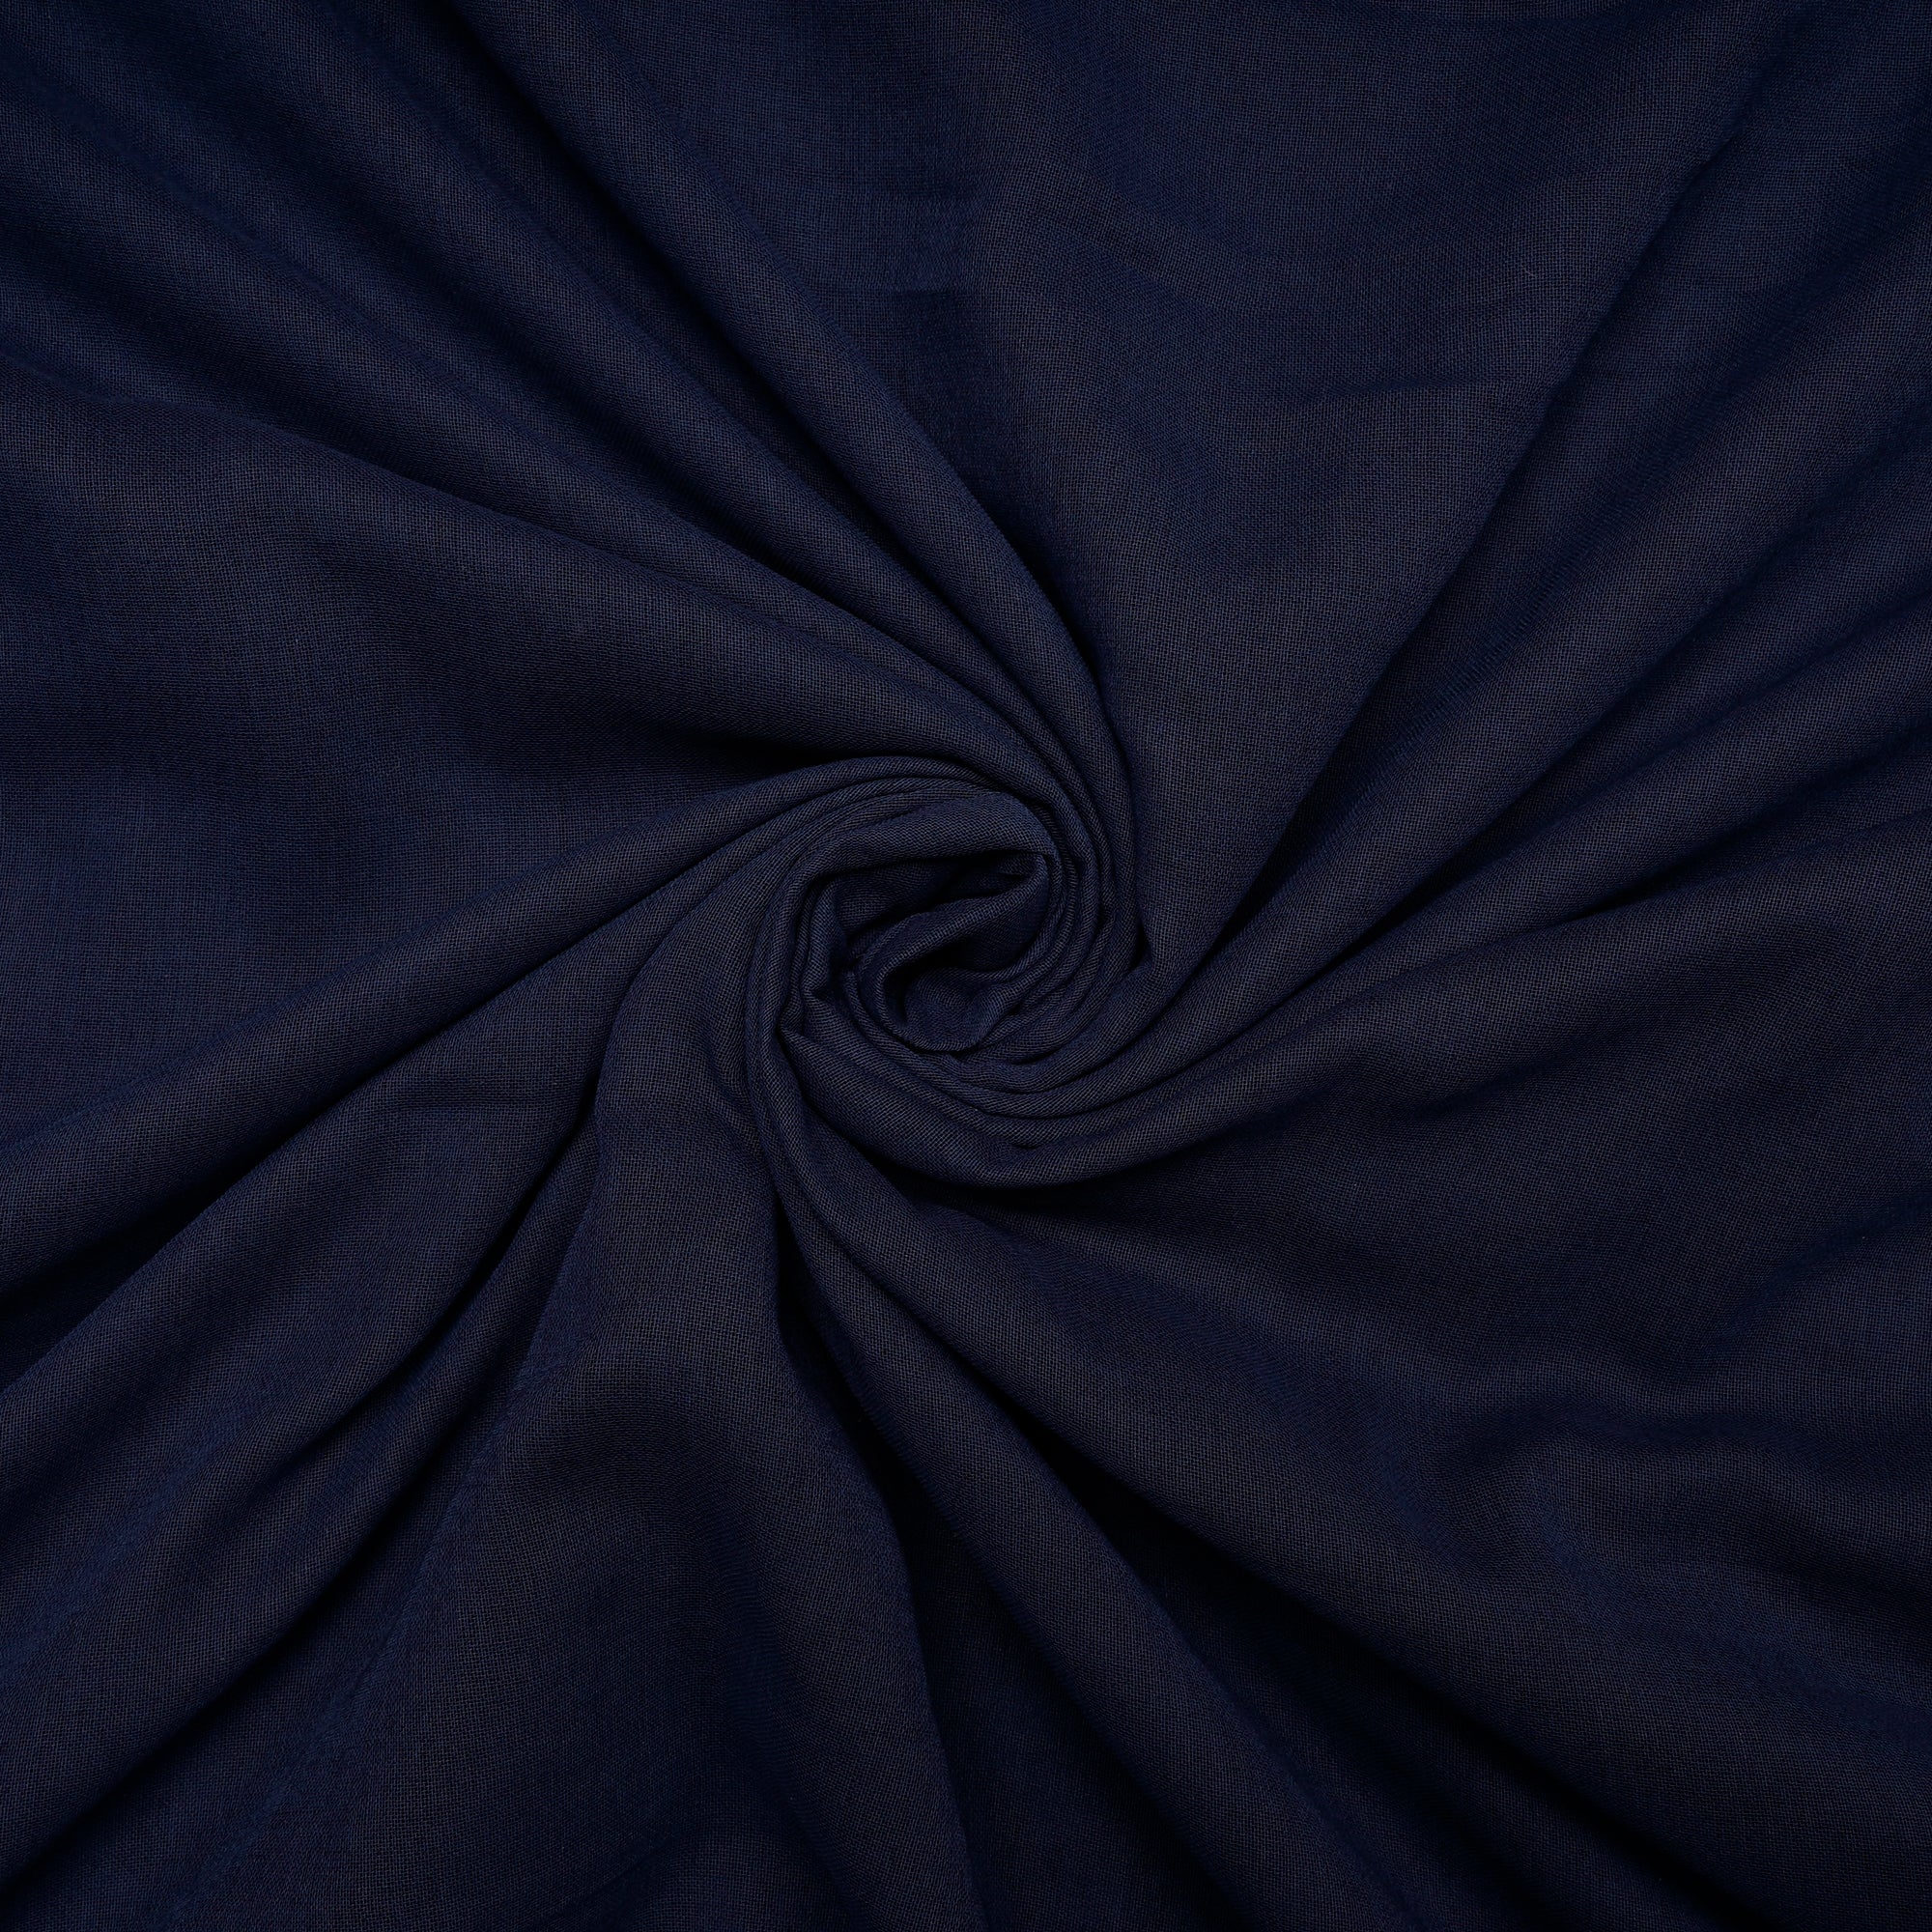 Space Blue Color Denim Cotton Voile Fabric